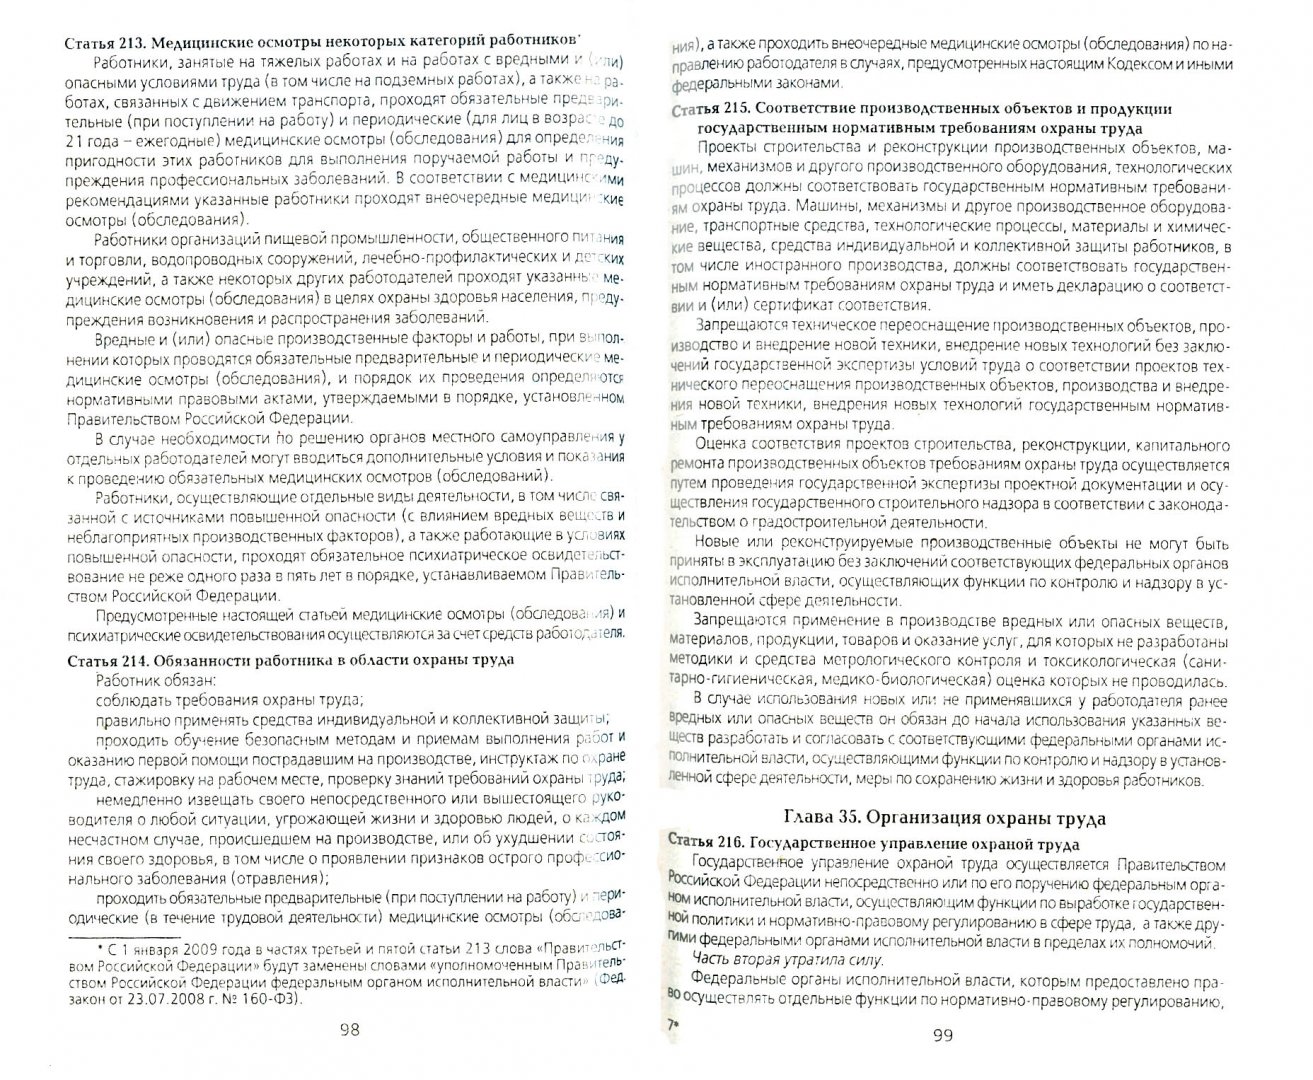 Иллюстрация 1 из 5 для Трудовой кодекс Российской Федерации по состоянию на 10 марта 2009 года | Лабиринт - книги. Источник: Лабиринт